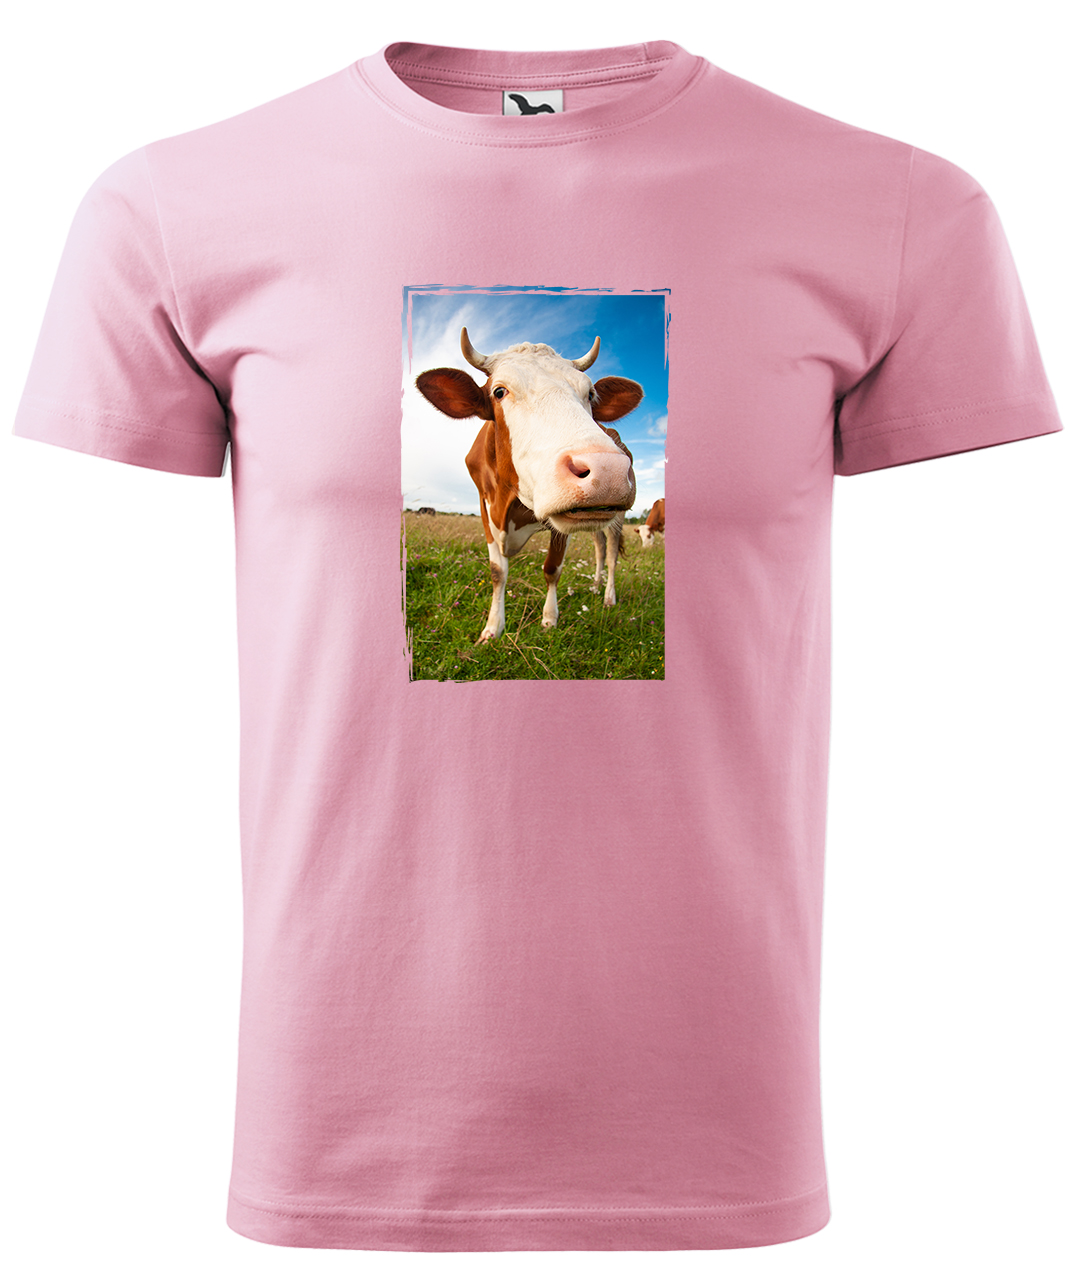 Dětské tričko s krávou - Na pastvě Velikost: 8 let / 134 cm, Barva: Růžová (30), Délka rukávu: Krátký rukáv